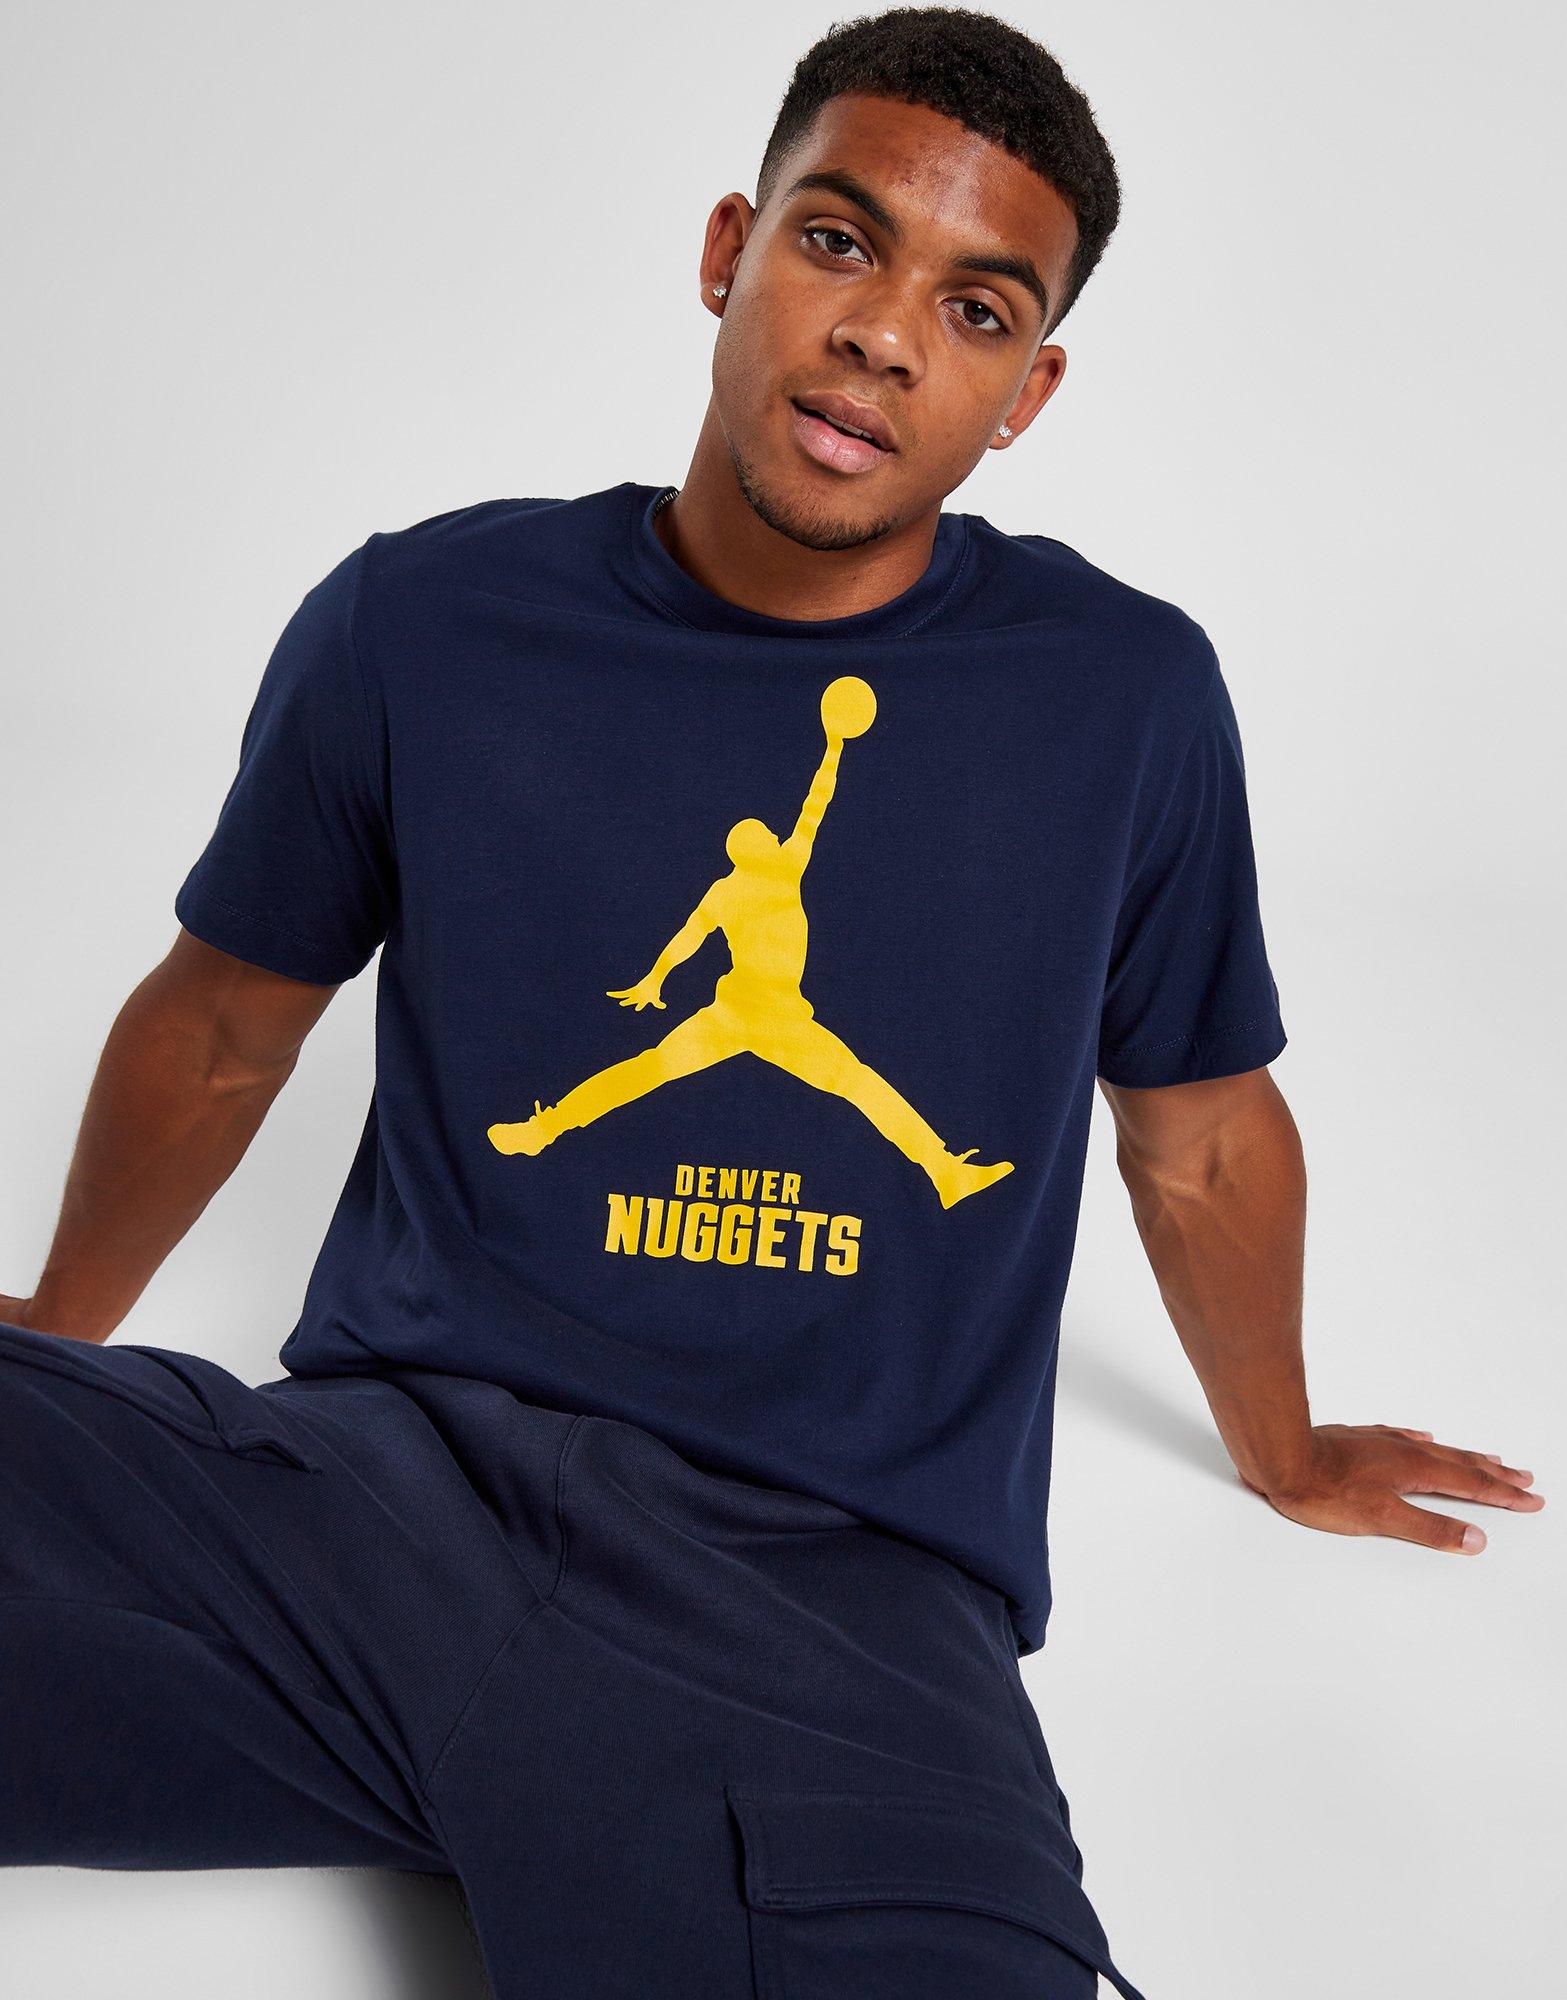 Playera Nike de la NBA para hombre Denver Nuggets.